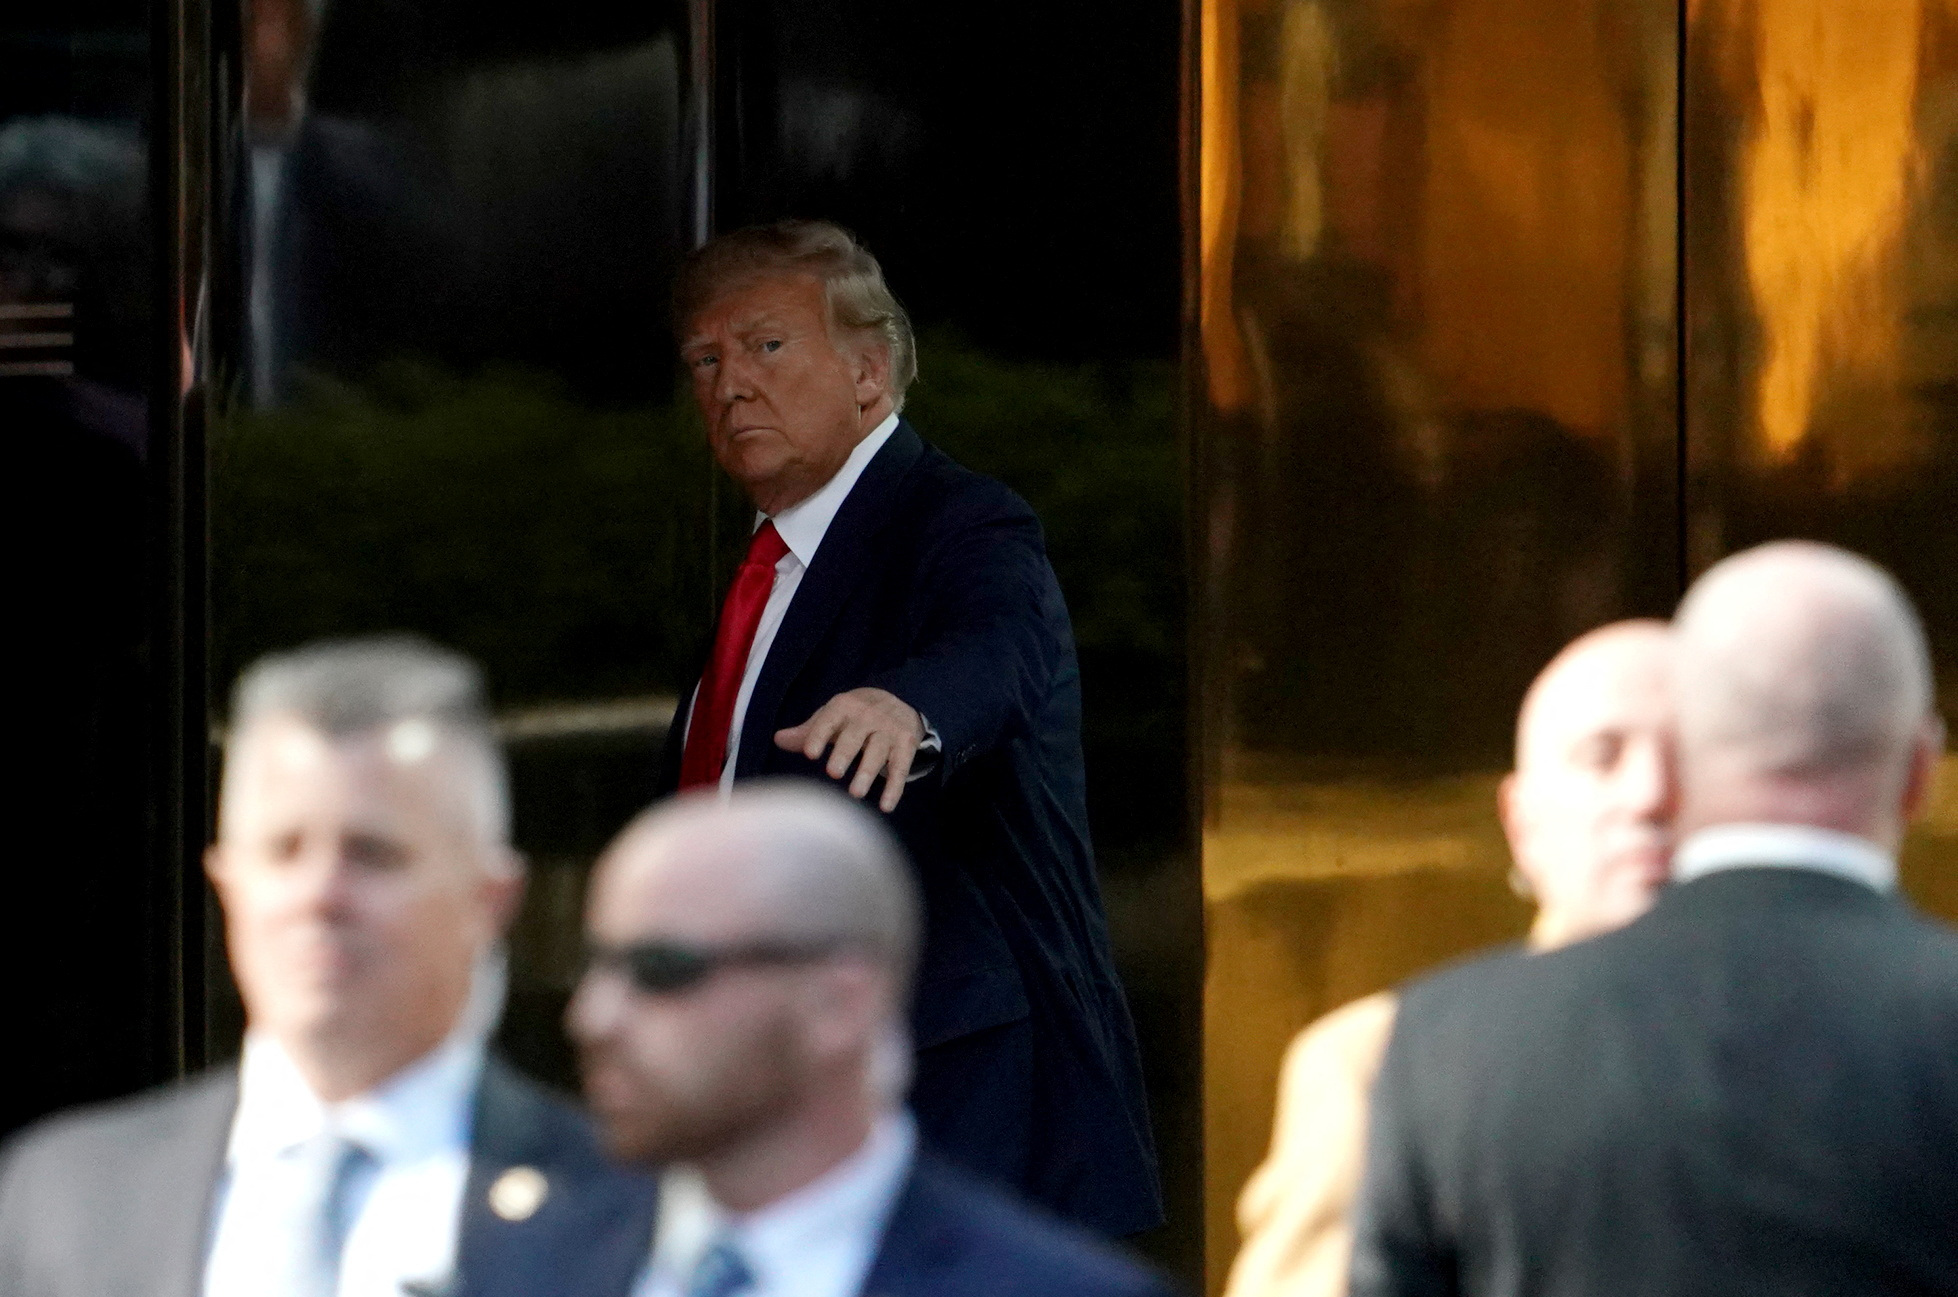 Donald Trump llega a la Trump Tower, luego de ser acusado. Deberá comparecer ante la Justicia norteamericana. REUTERS/David Dee Delgado